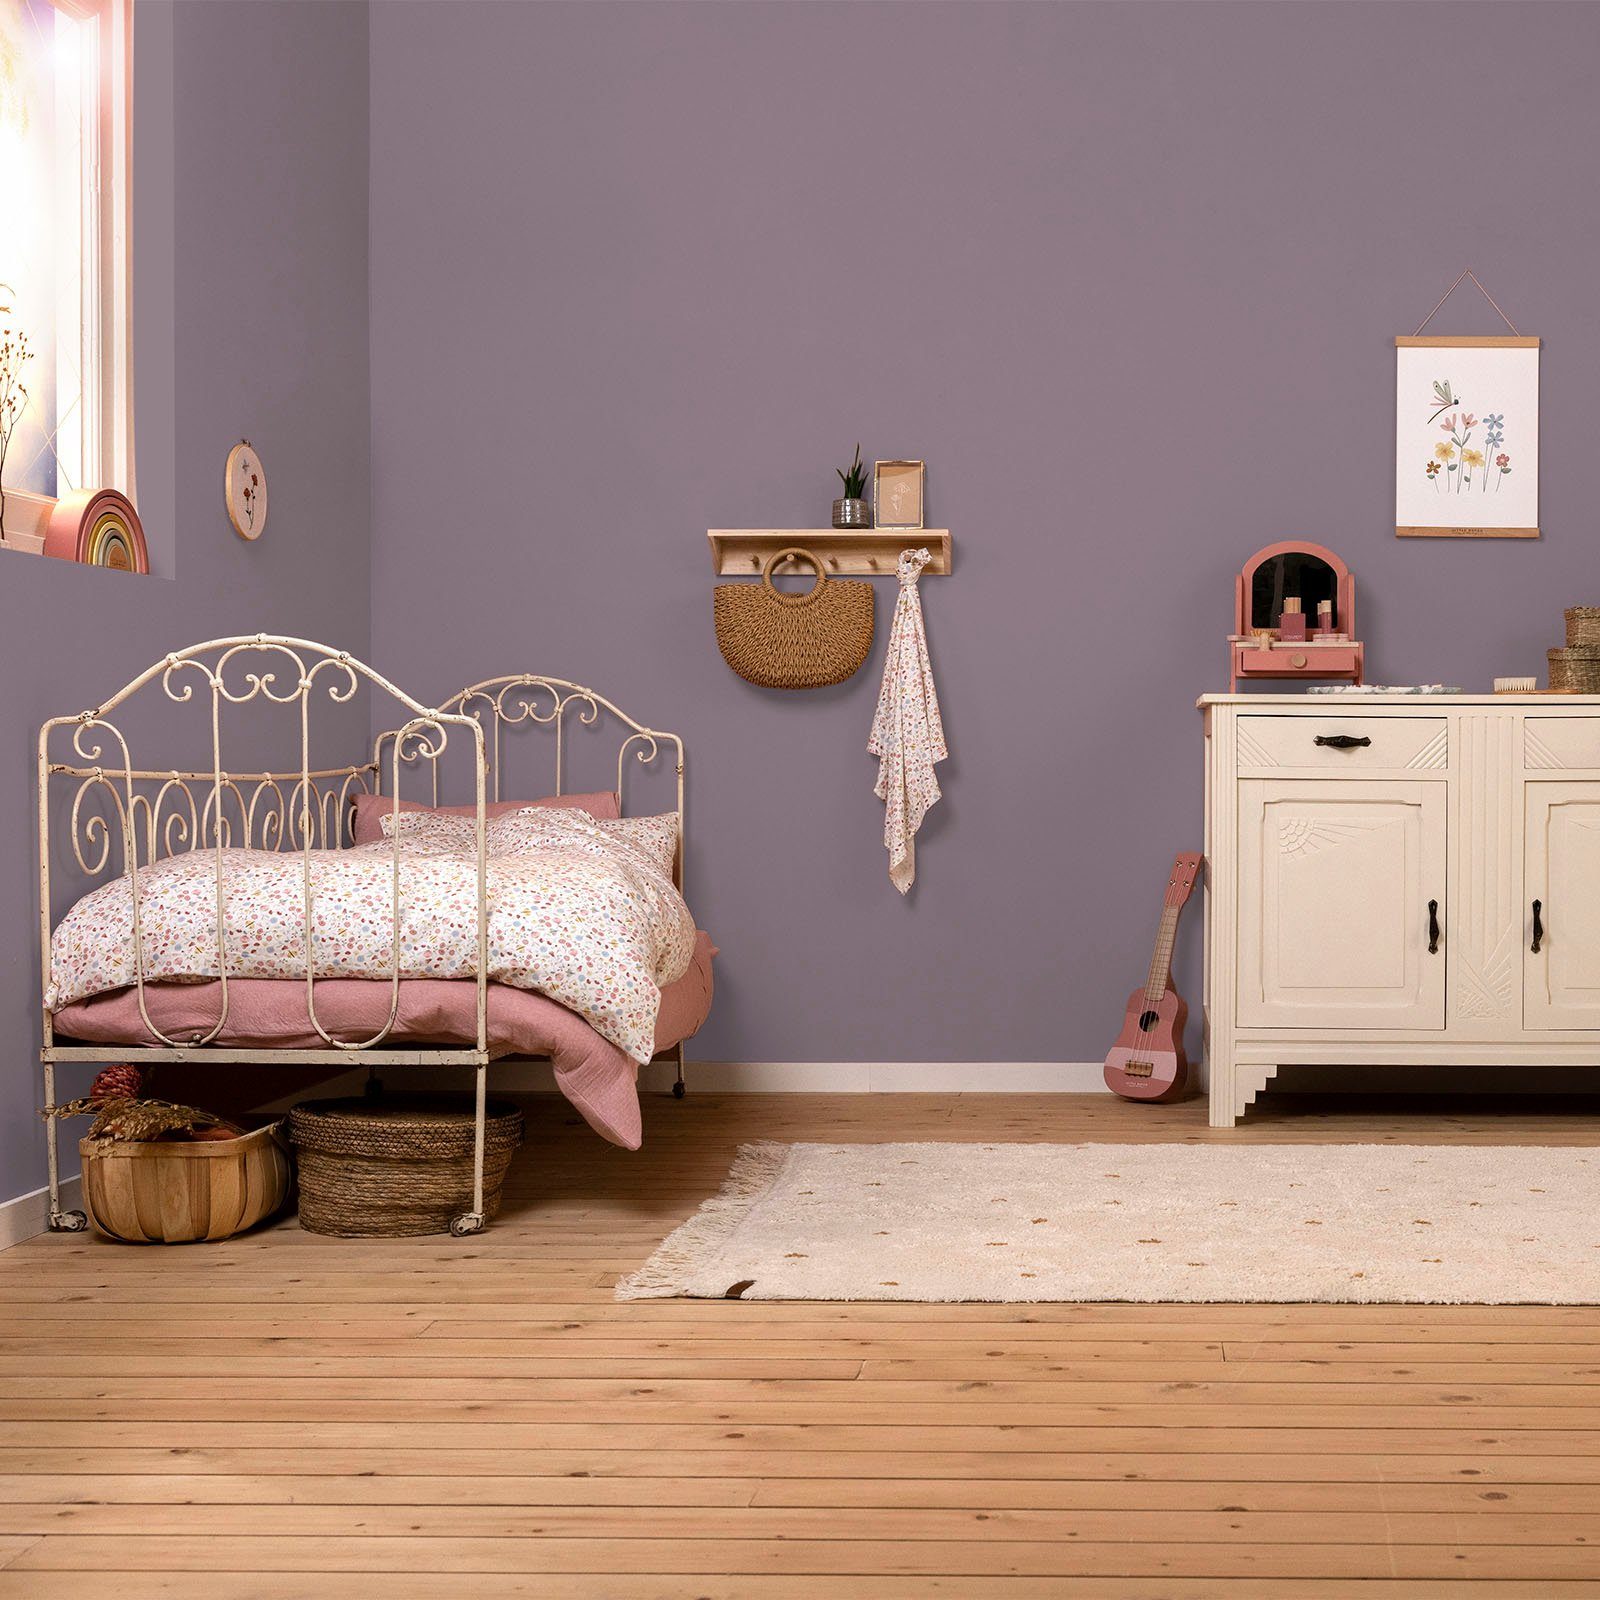 Kinderzimmer hochdeckend und Mauve extra Vintage geeignet Wallpaint, für LITTLE matt, DUTCH waschbeständig, Lila Wandfarbe